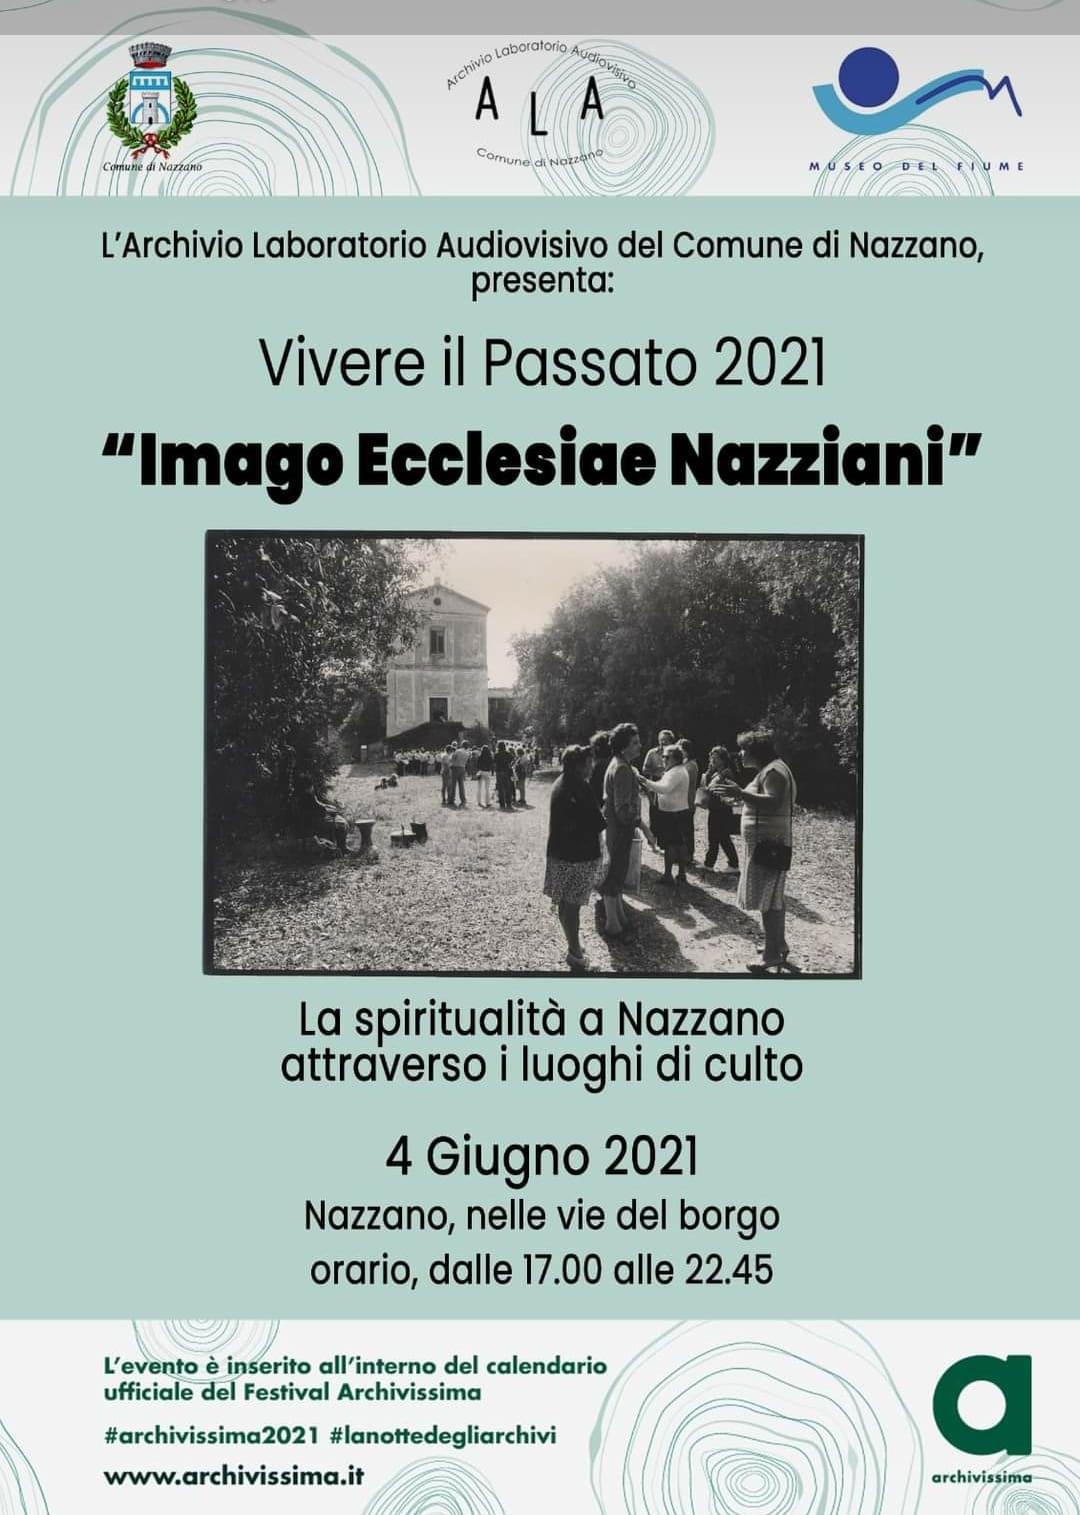 Vivere il passato 2021 "Imago Ecclesiae Nazziani"